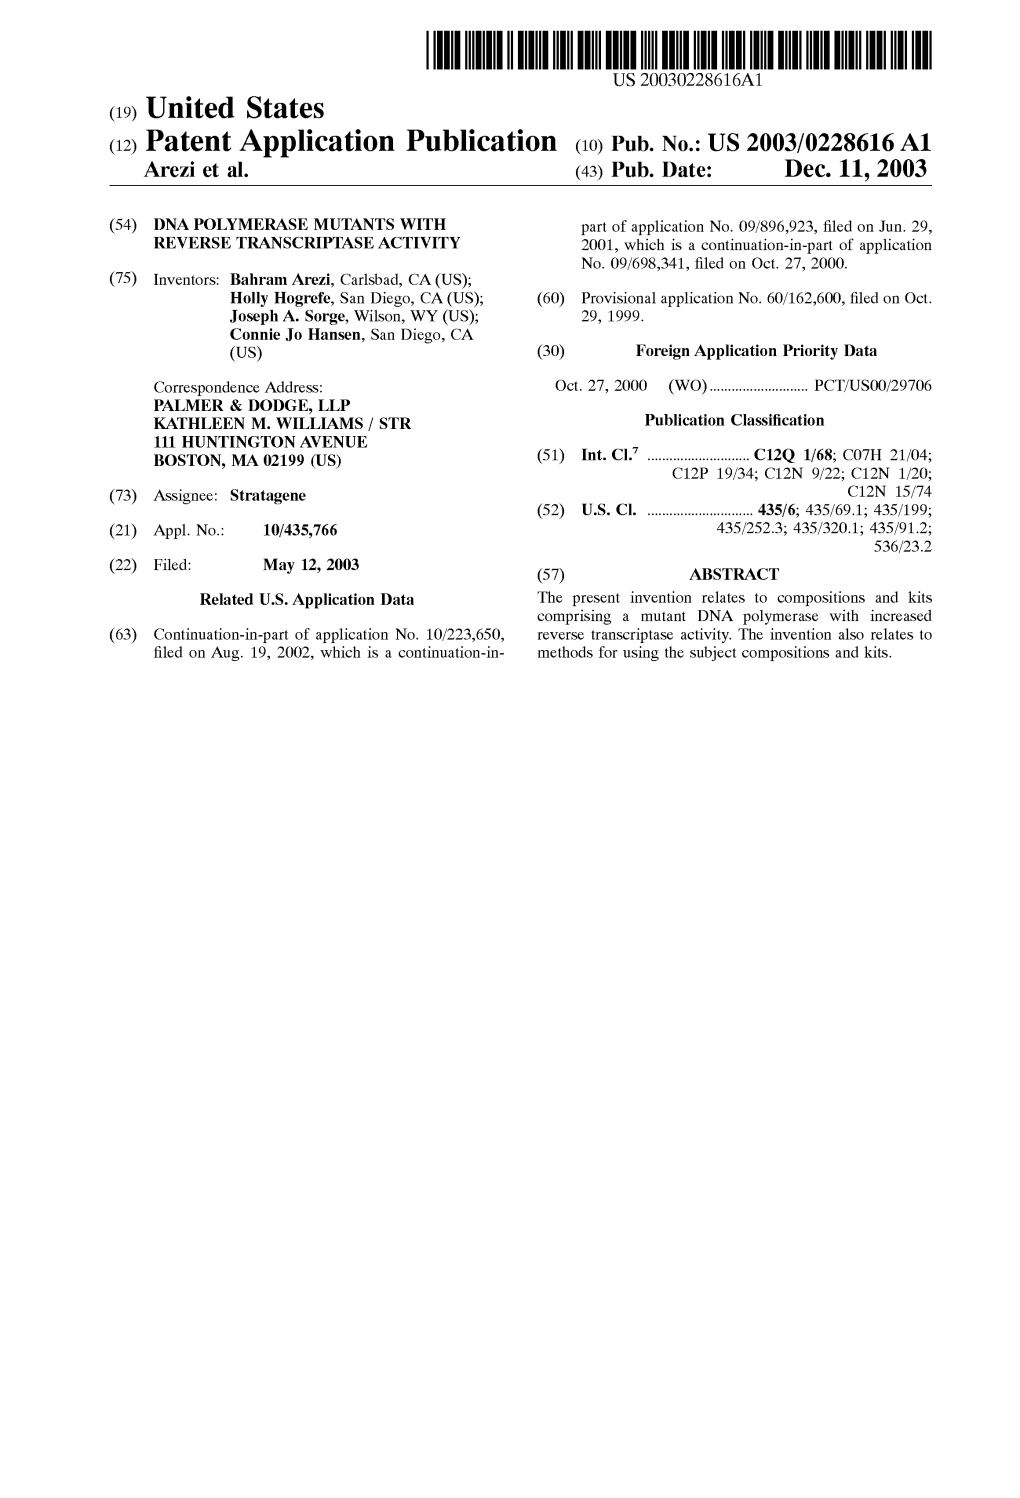 (12) Patent Application Publication (10) Pub